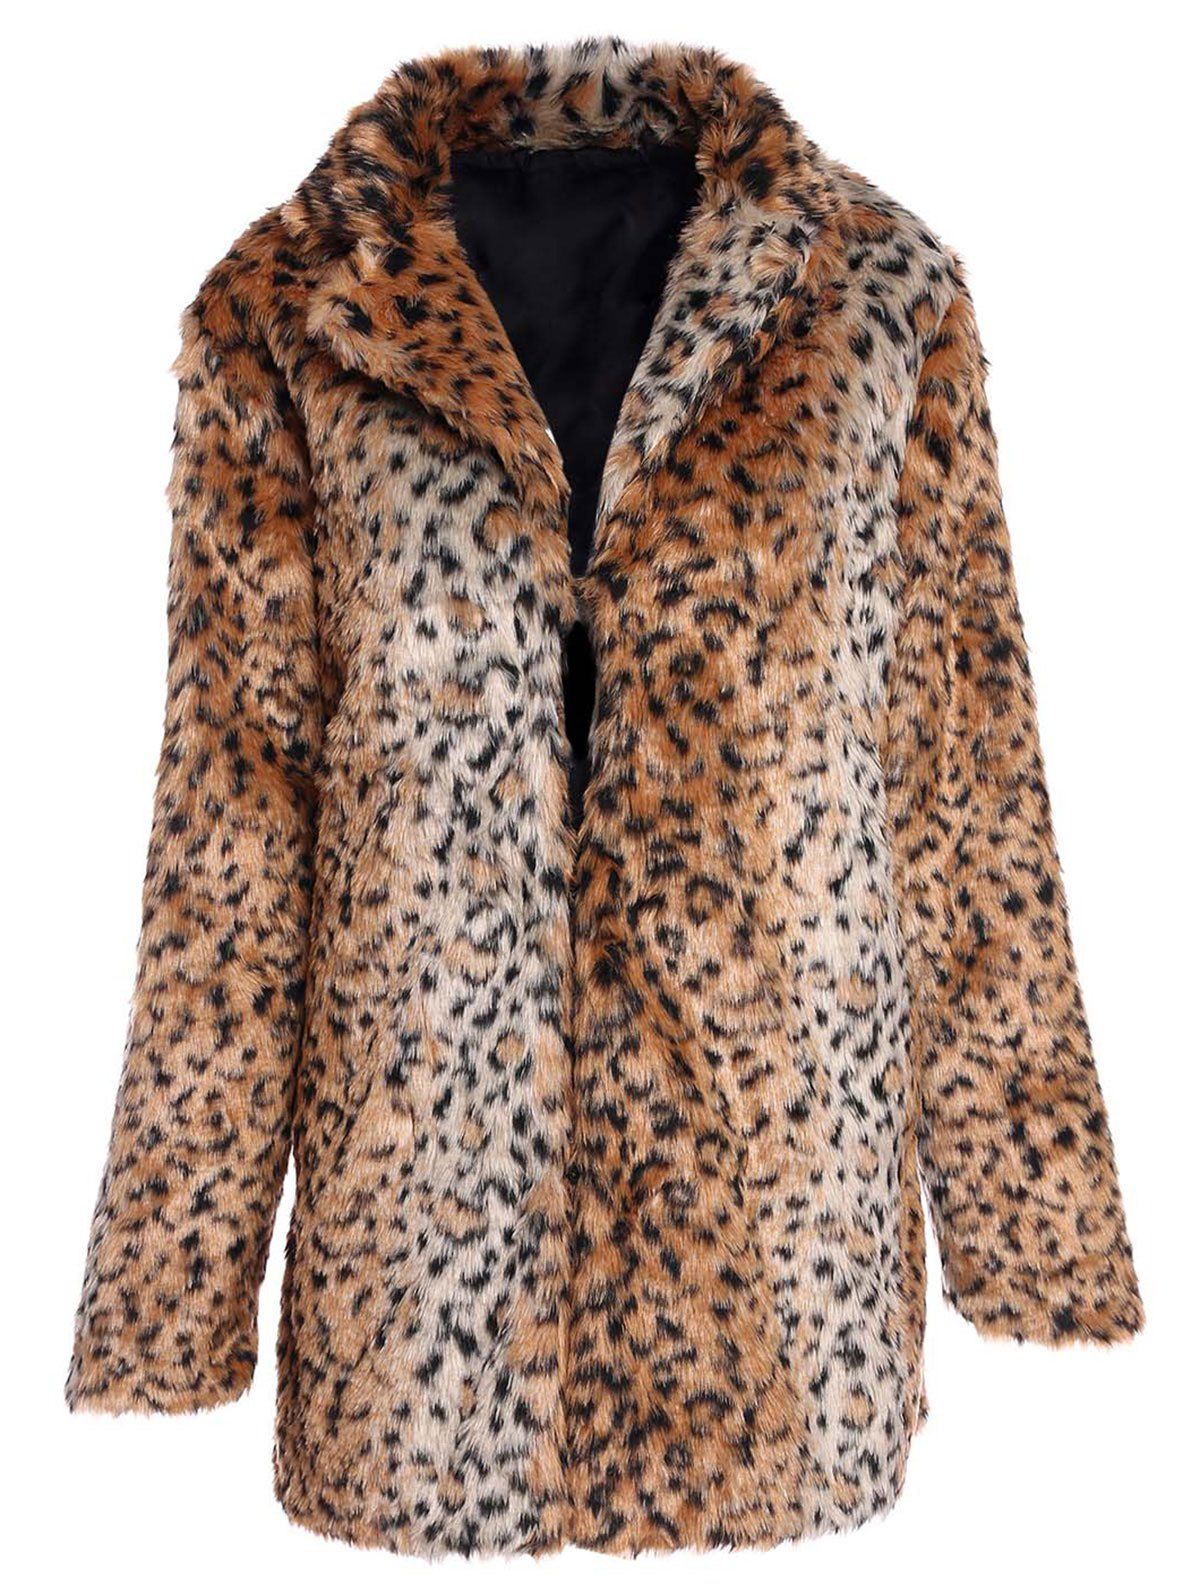 Trendy Long Sleeve Turn-Down Neck Pocket Design Faux Fur Women's Coat - LEOPARD 3XL